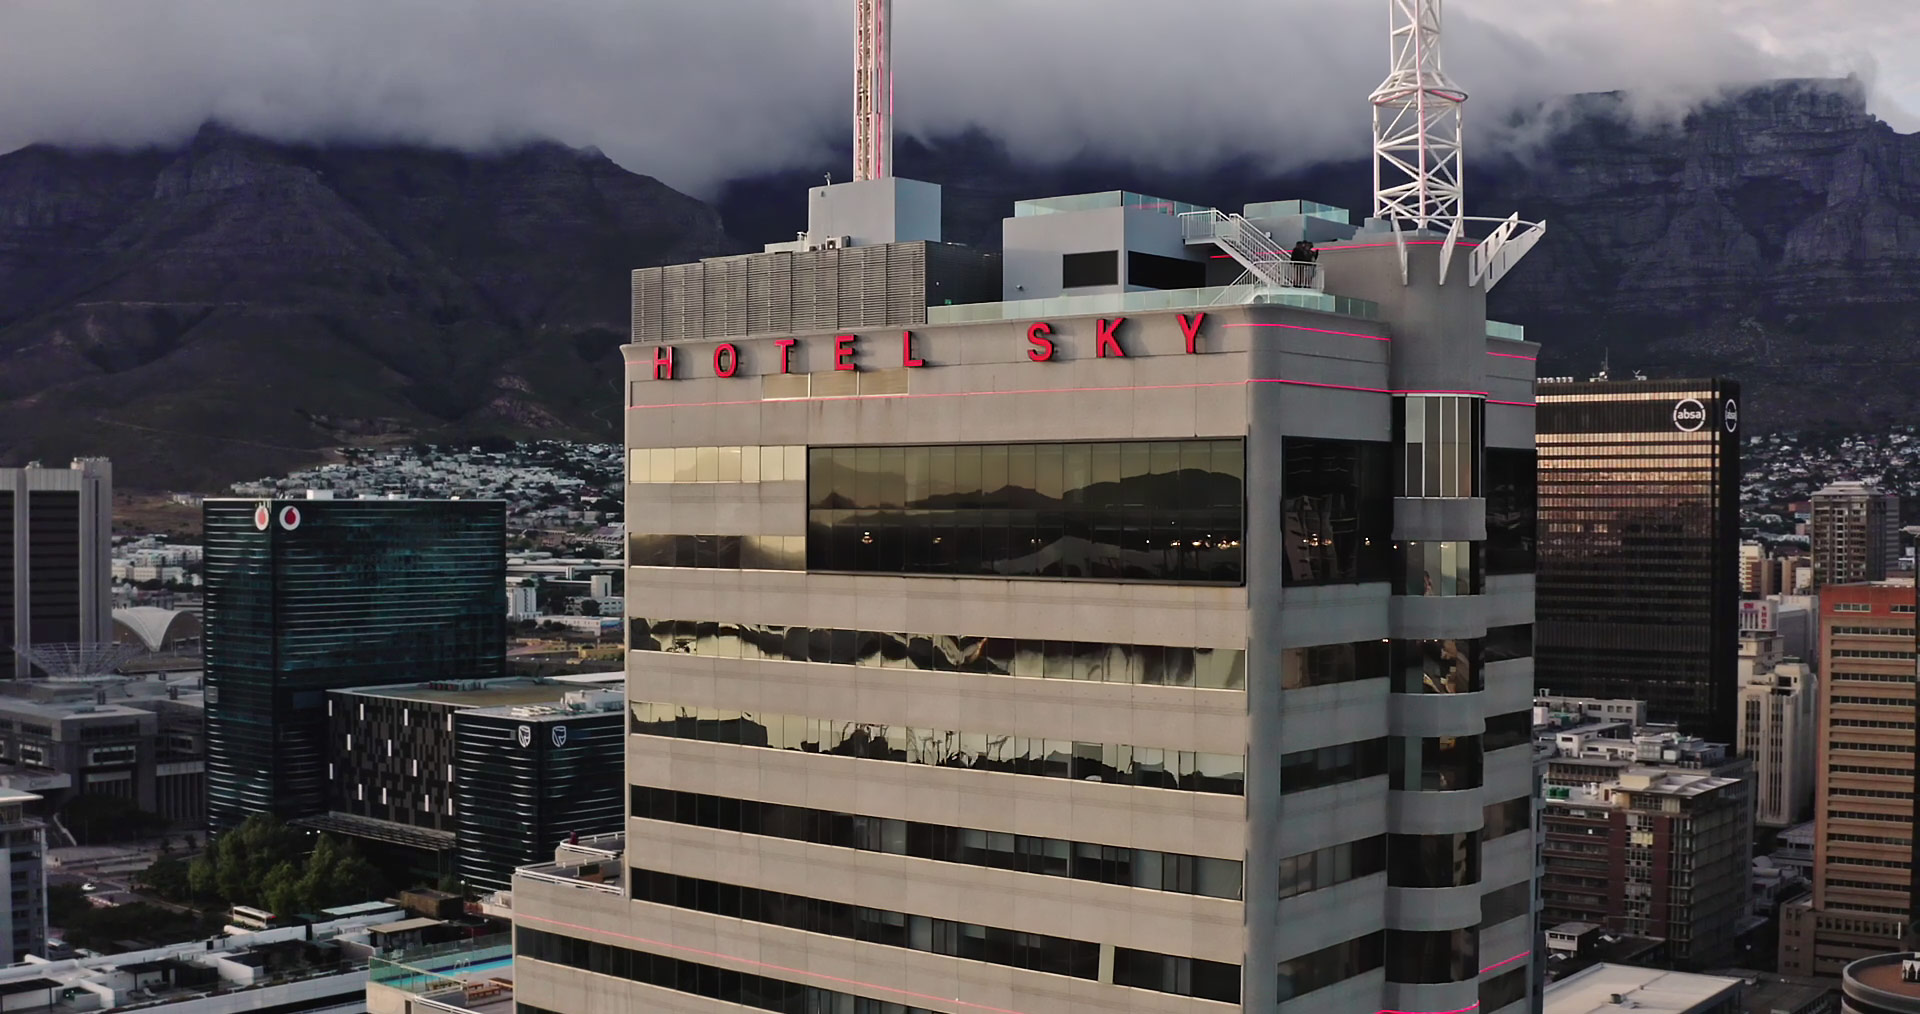 Hotel Sky in Kapstadt mit dem raumsparenden SuperTube Entwässerungssystem in einem Renovierungsprojekt